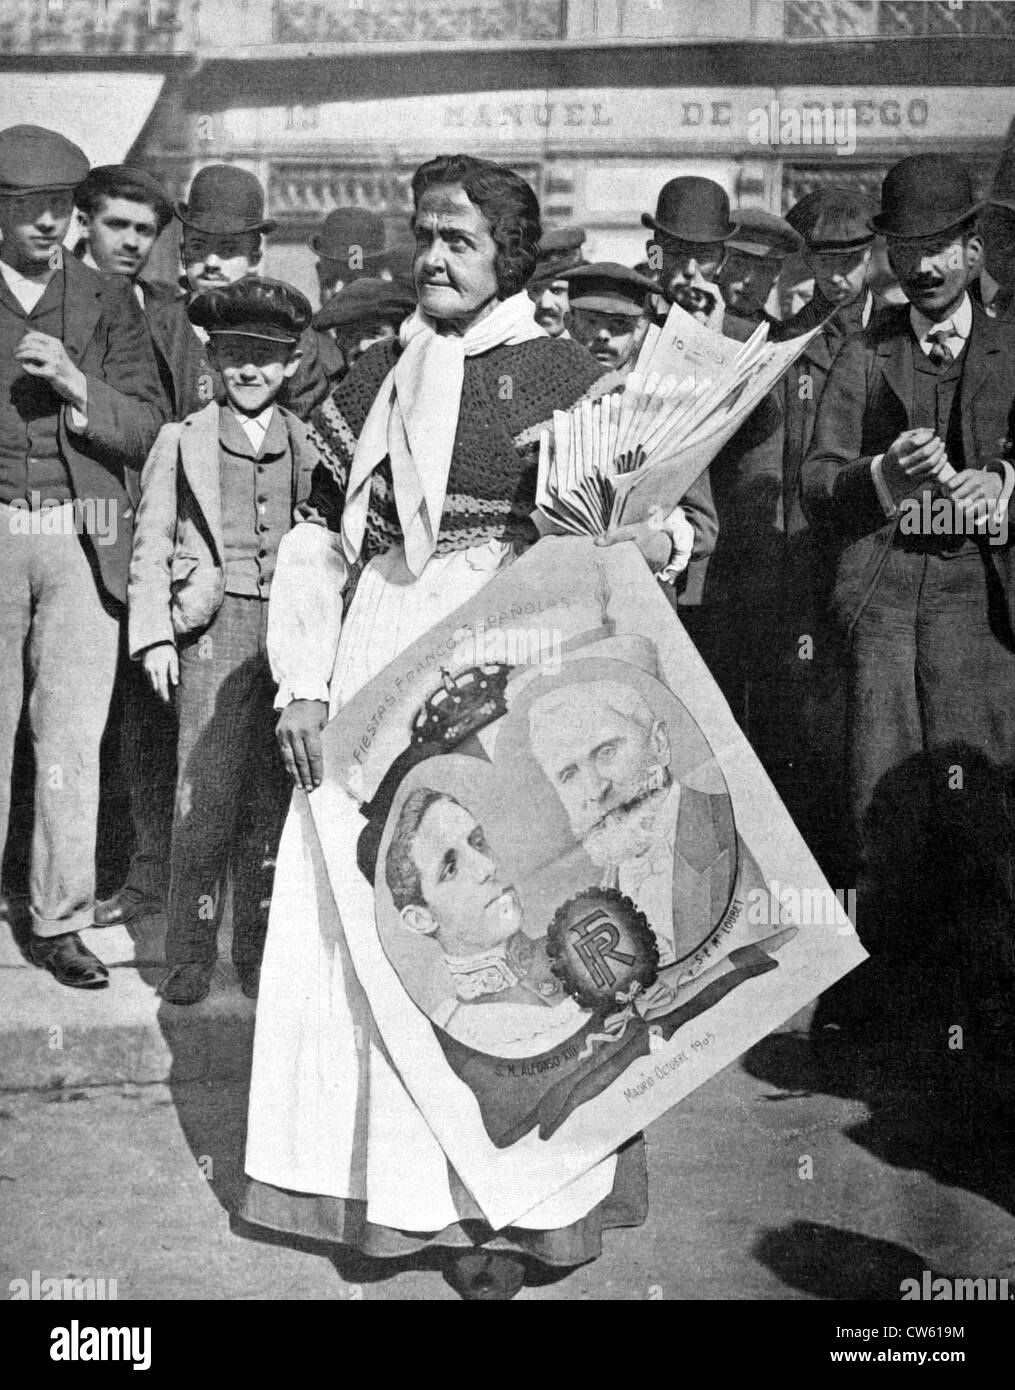 Per le strade di Madrid, una donna vendita di quotidiani e immagini popolari (1905) Foto Stock